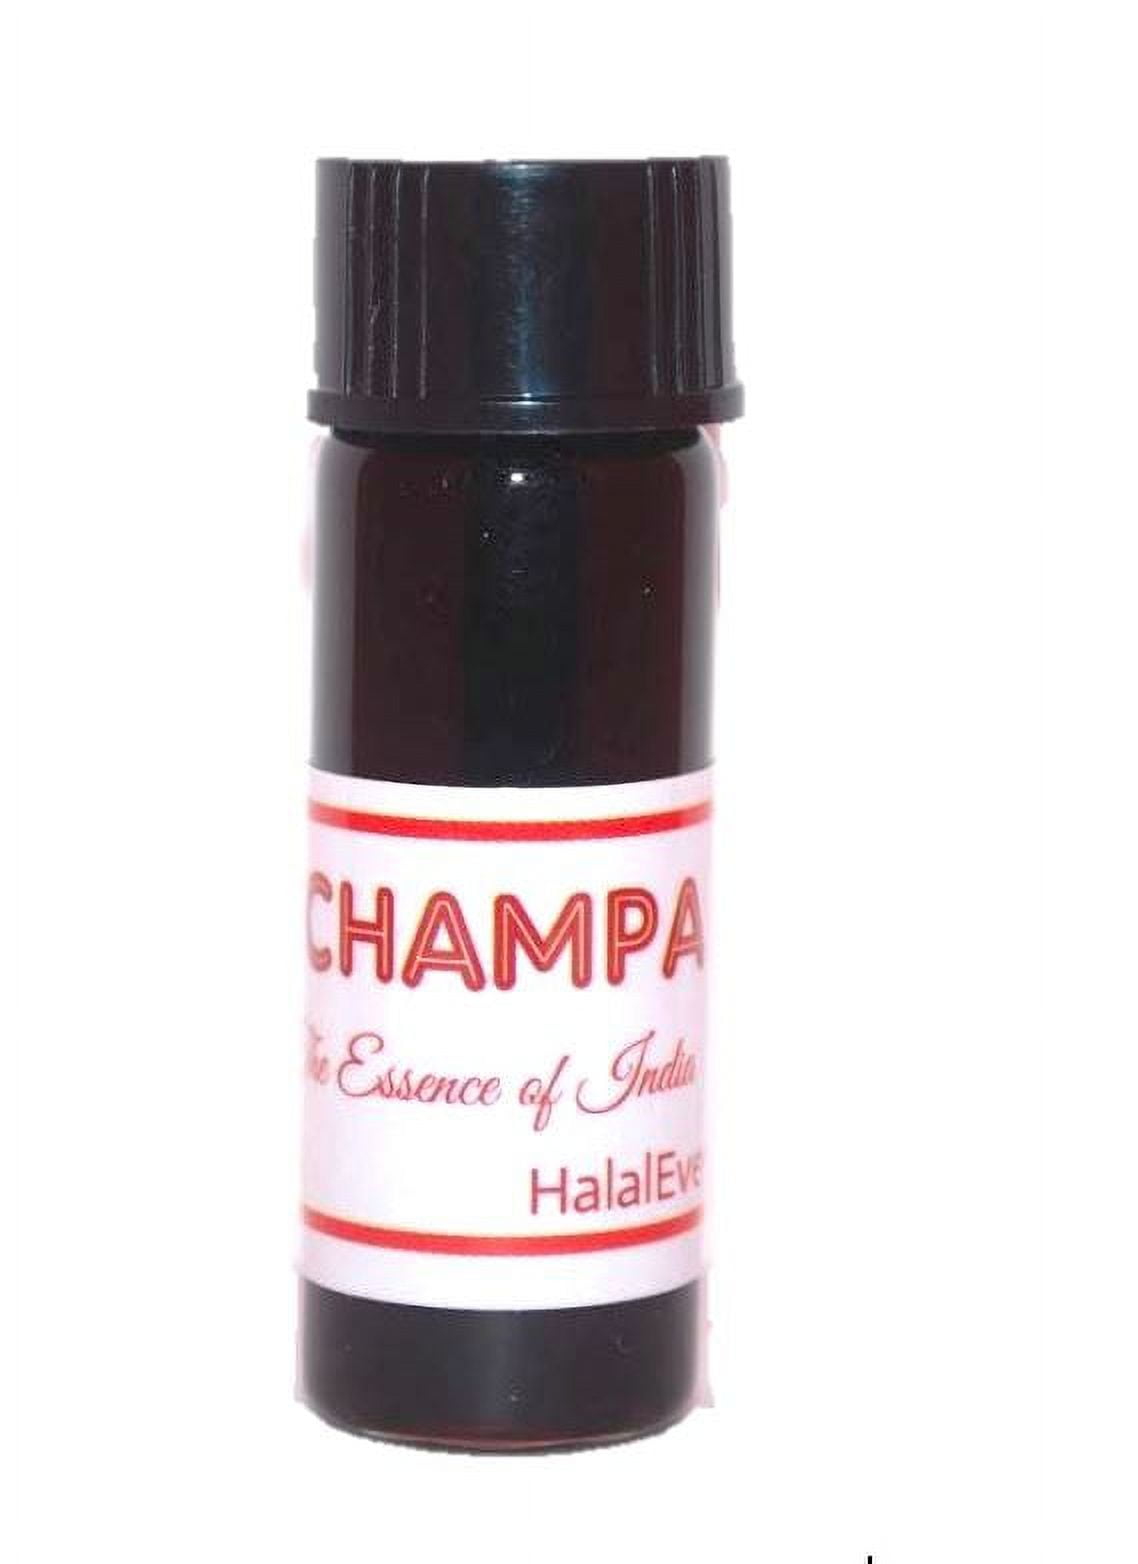 Nag Champa Attar, Essential Oil Perfume